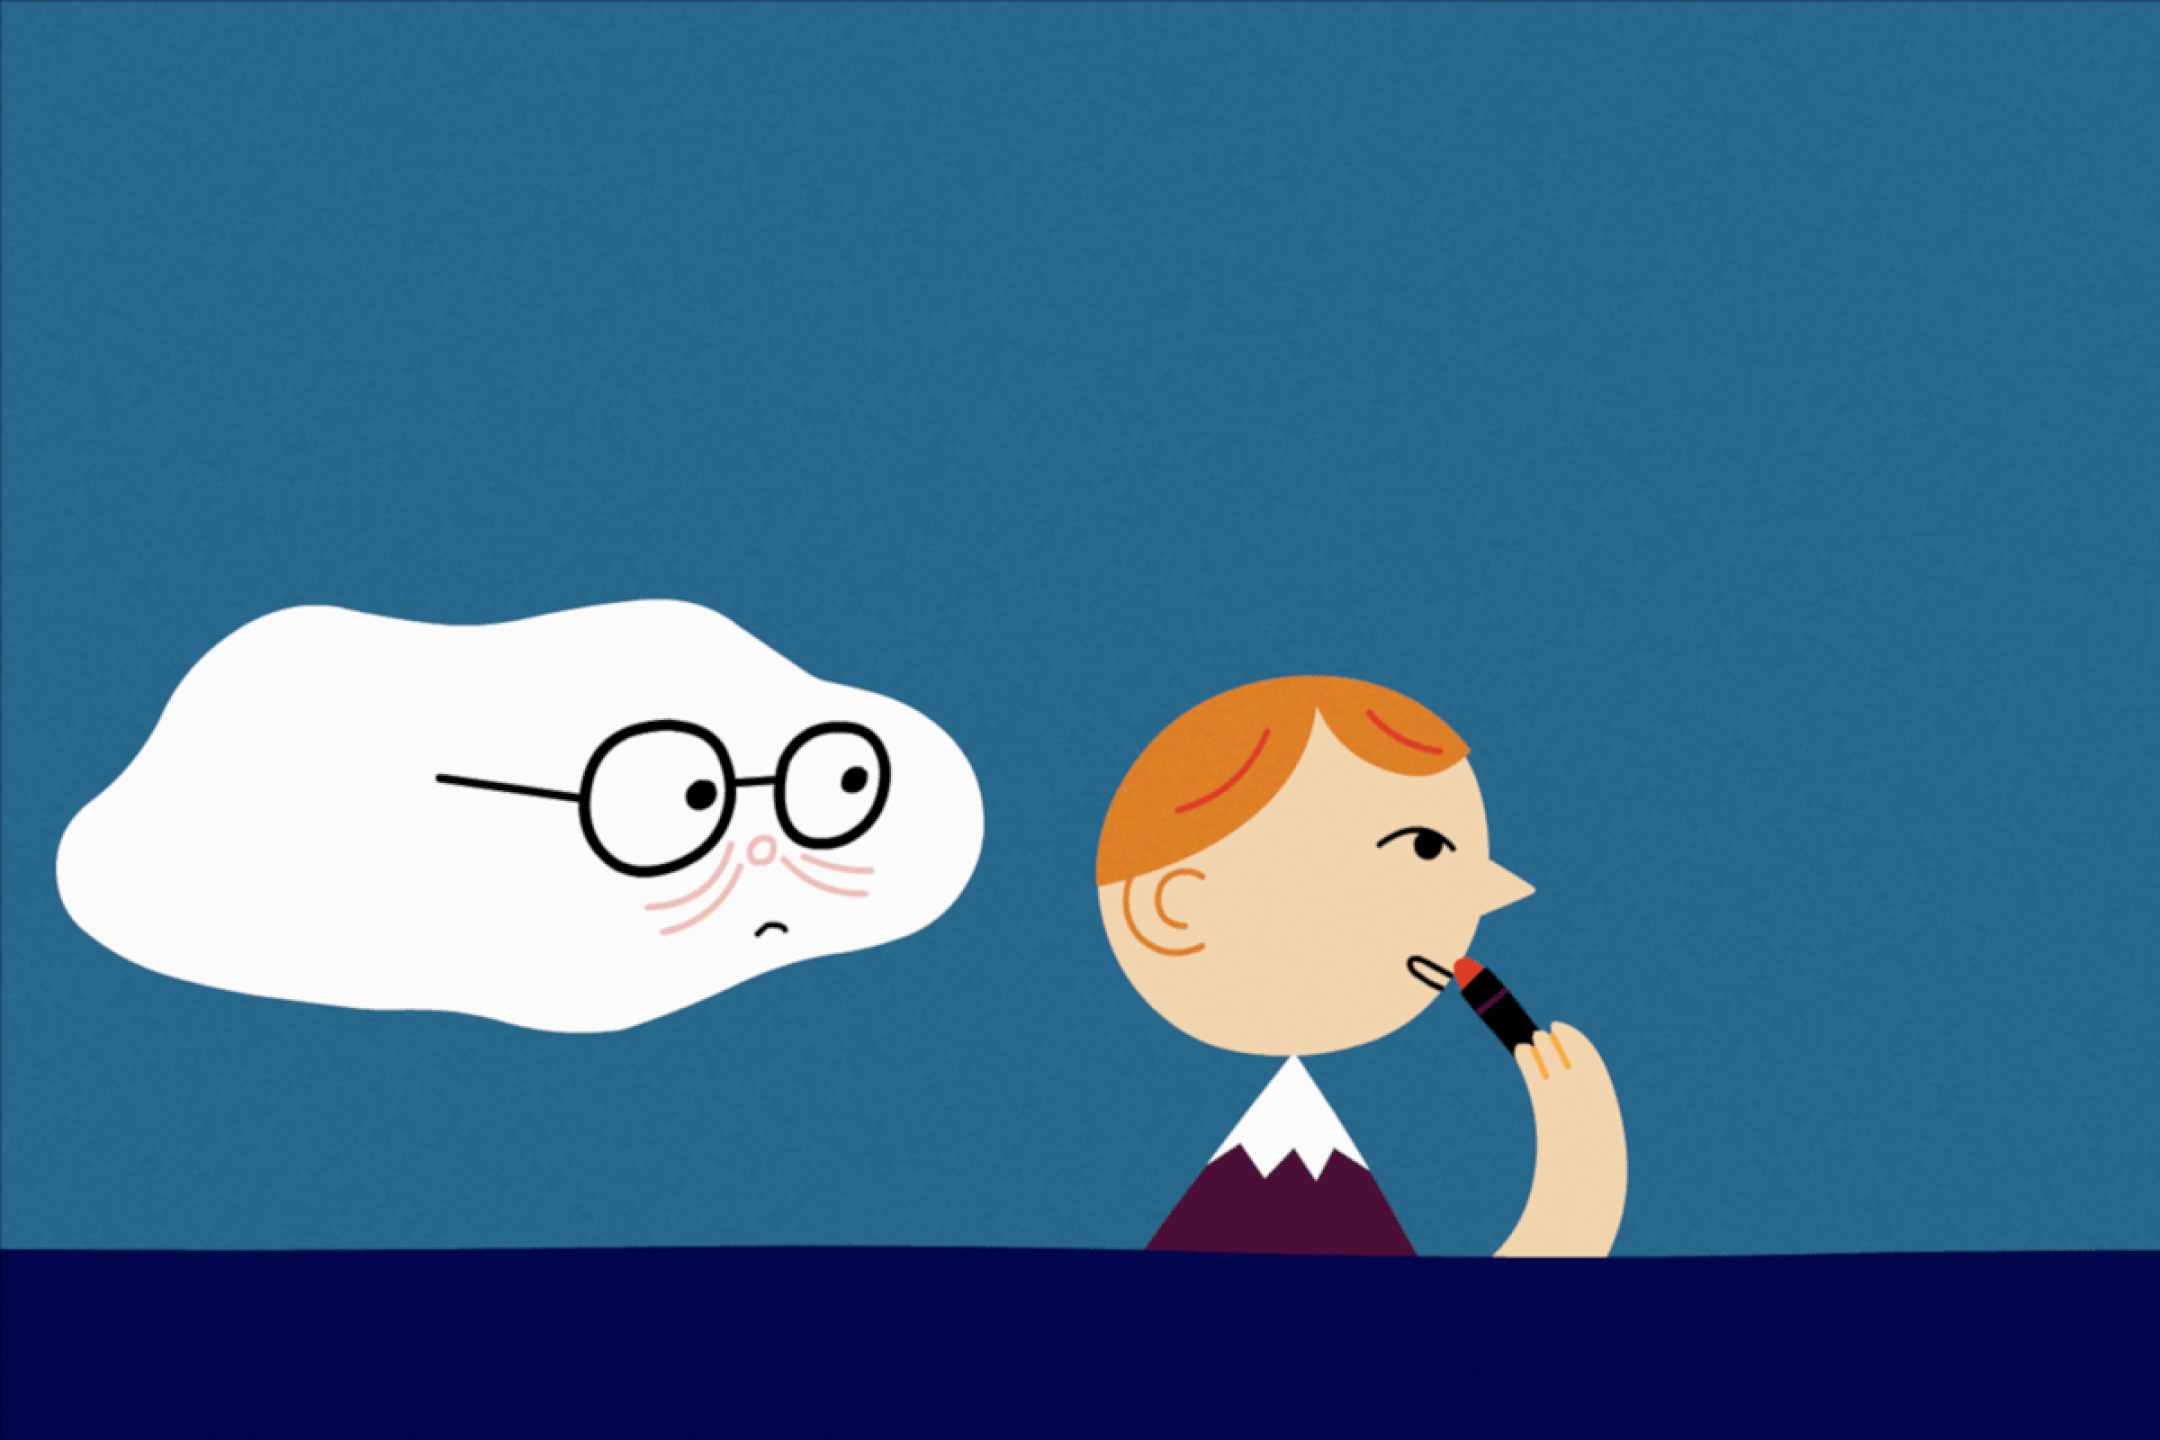 Eine Animation einer Figur, deren Kopf auf den Schultern eines Berges liegt und die Lippenstift aufträgt. Der Figur folgt eine Wolke, die ein etwas besorgtes Gesicht macht.